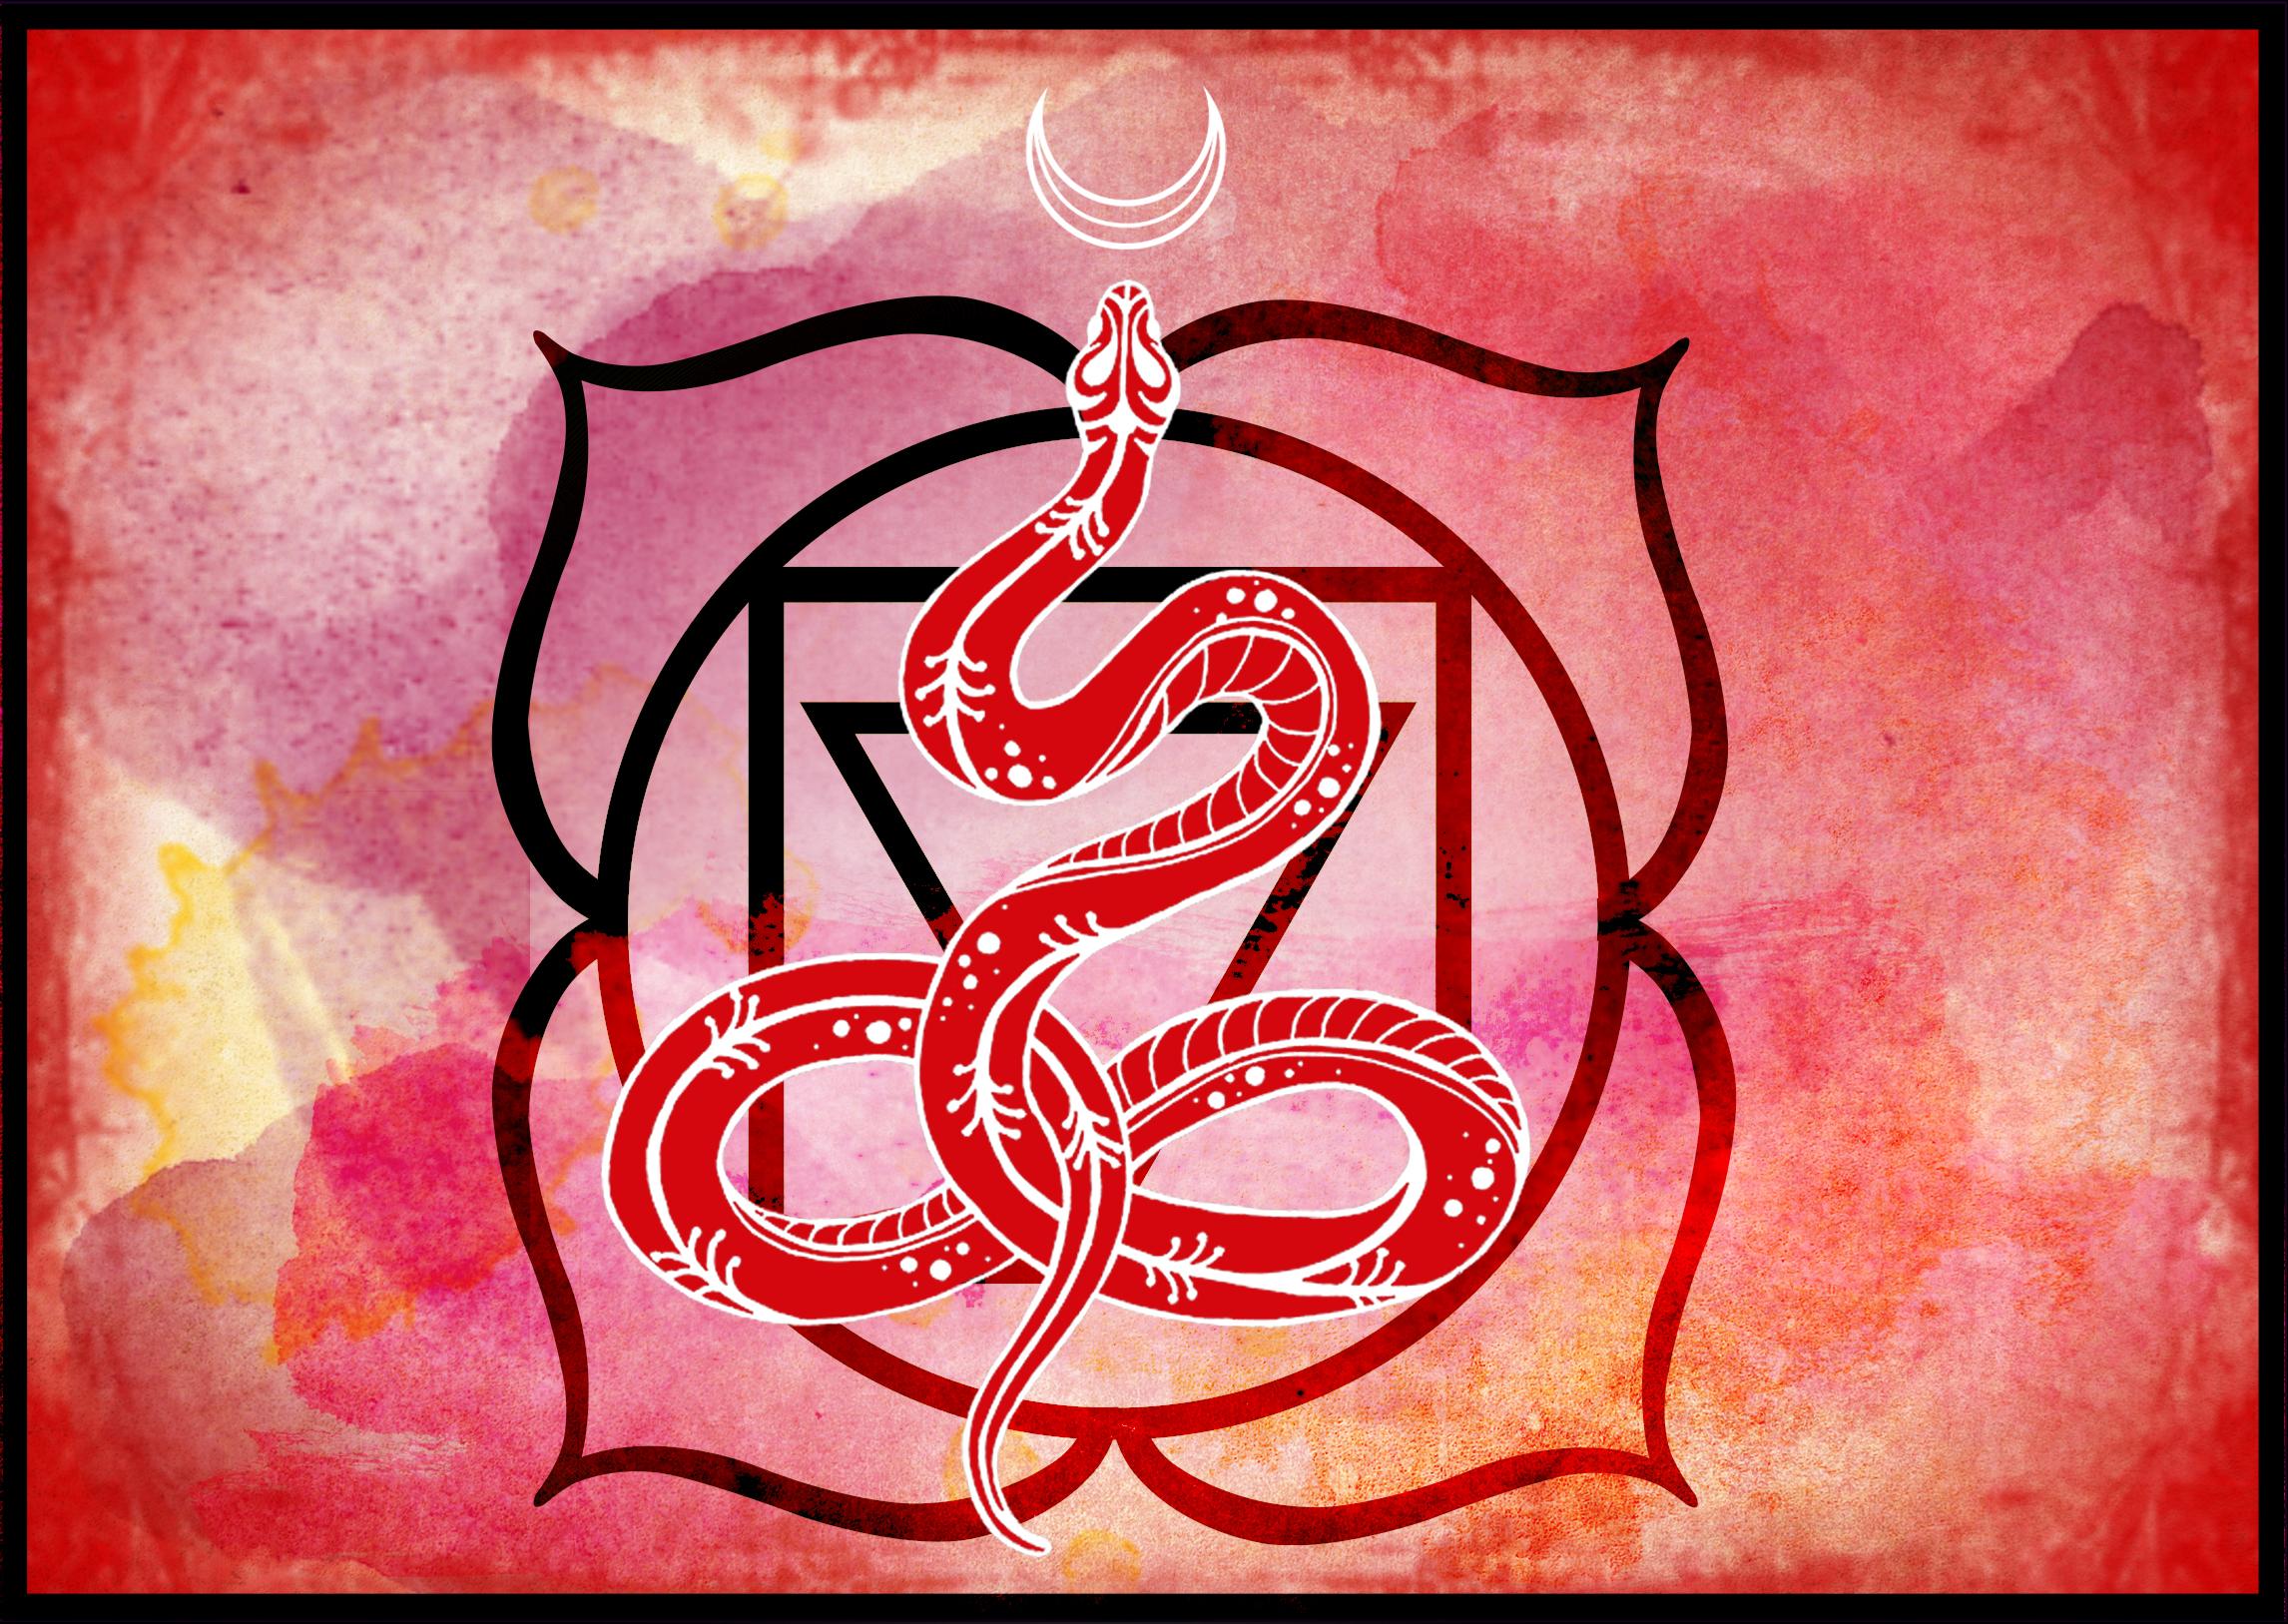 WildCore: Dancing the Divine Serpent